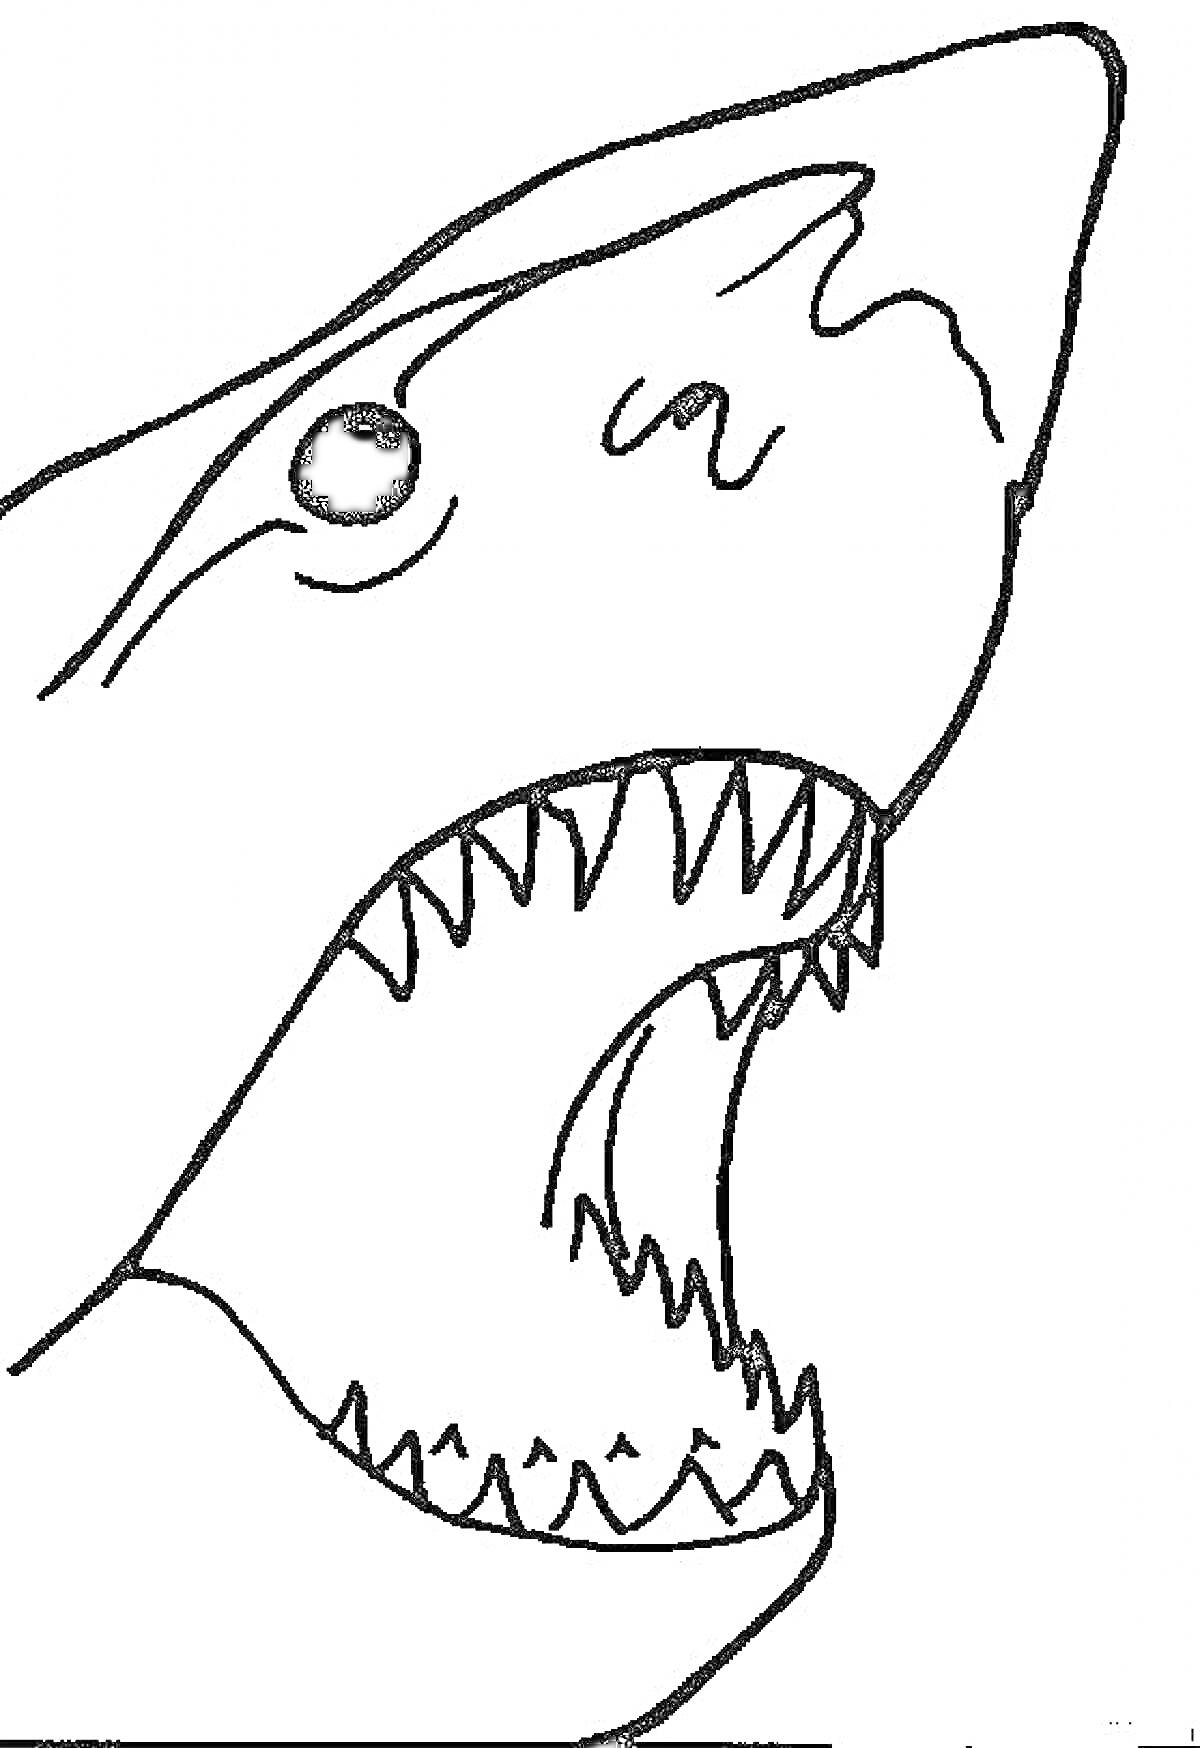 Голова акулы с открытой пастью и острыми зубами